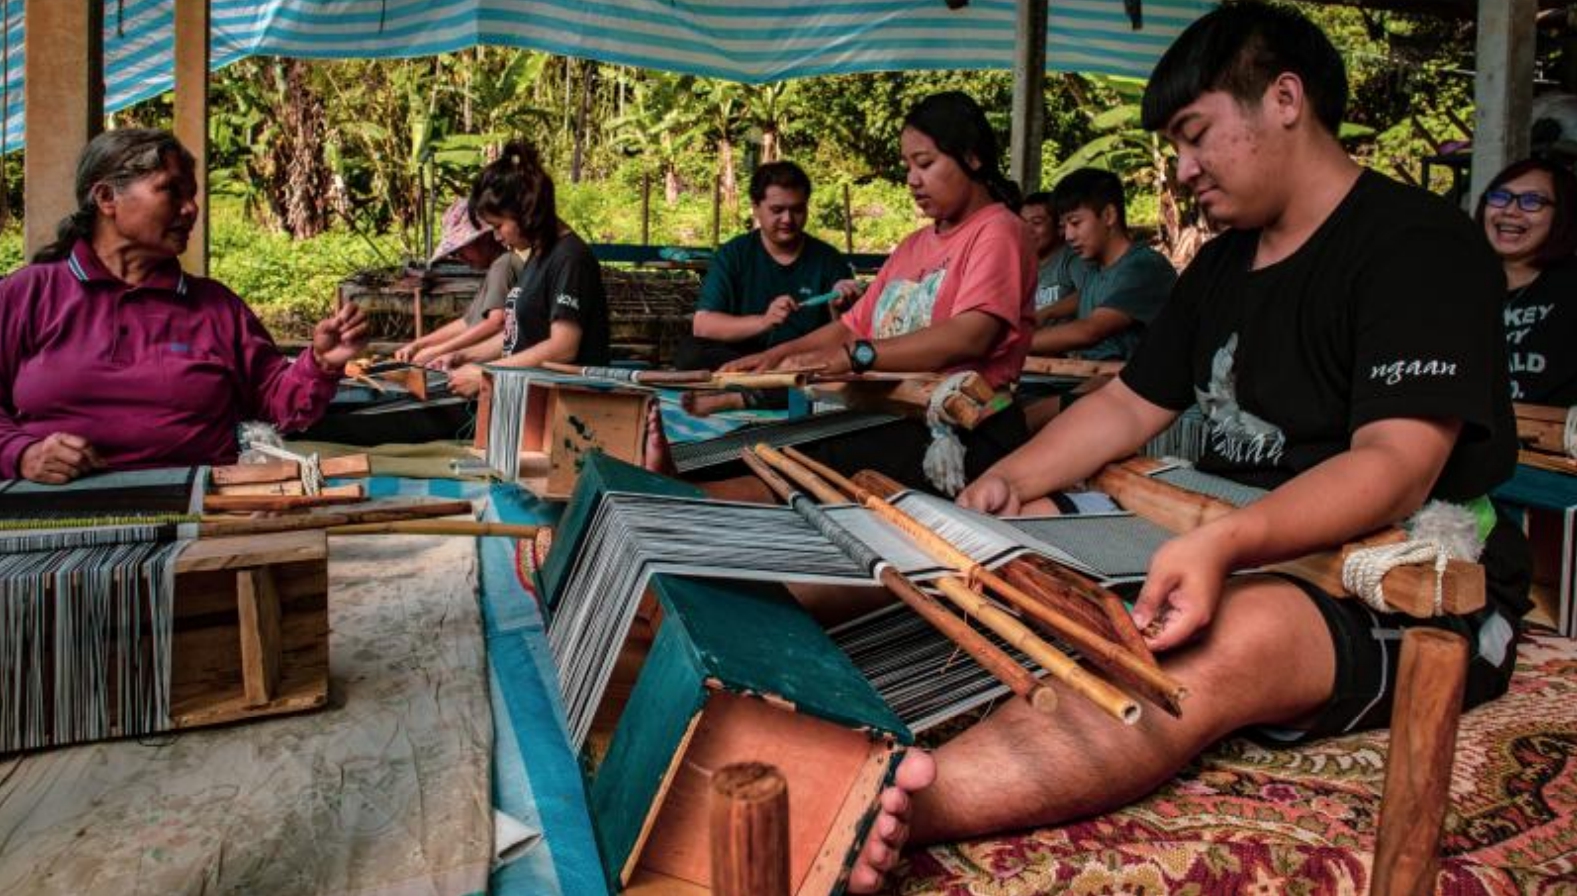 「vuvu的記憶」技藝工作坊讓原住民學生傳承與保存布農族織布文化技藝。